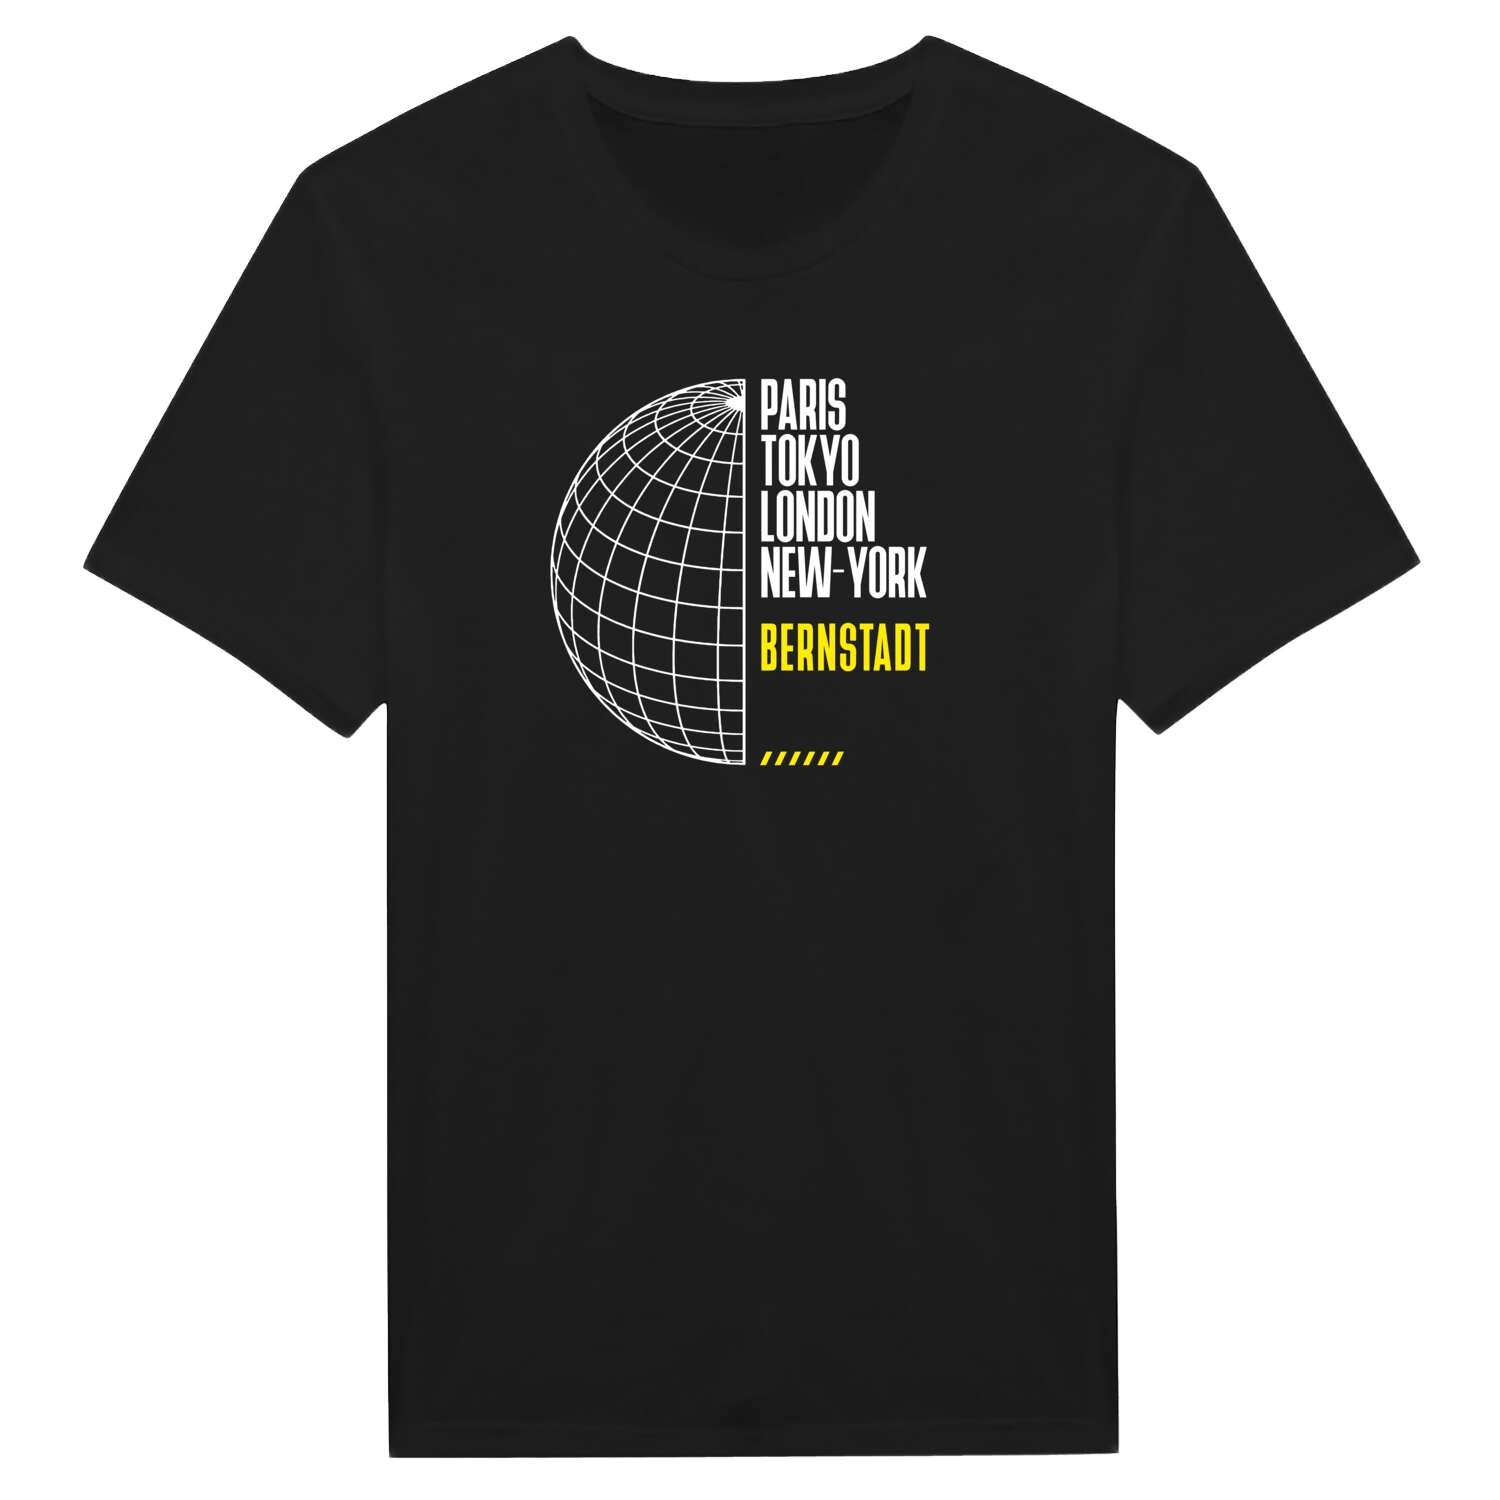 Bernstadt T-Shirt »Paris Tokyo London«